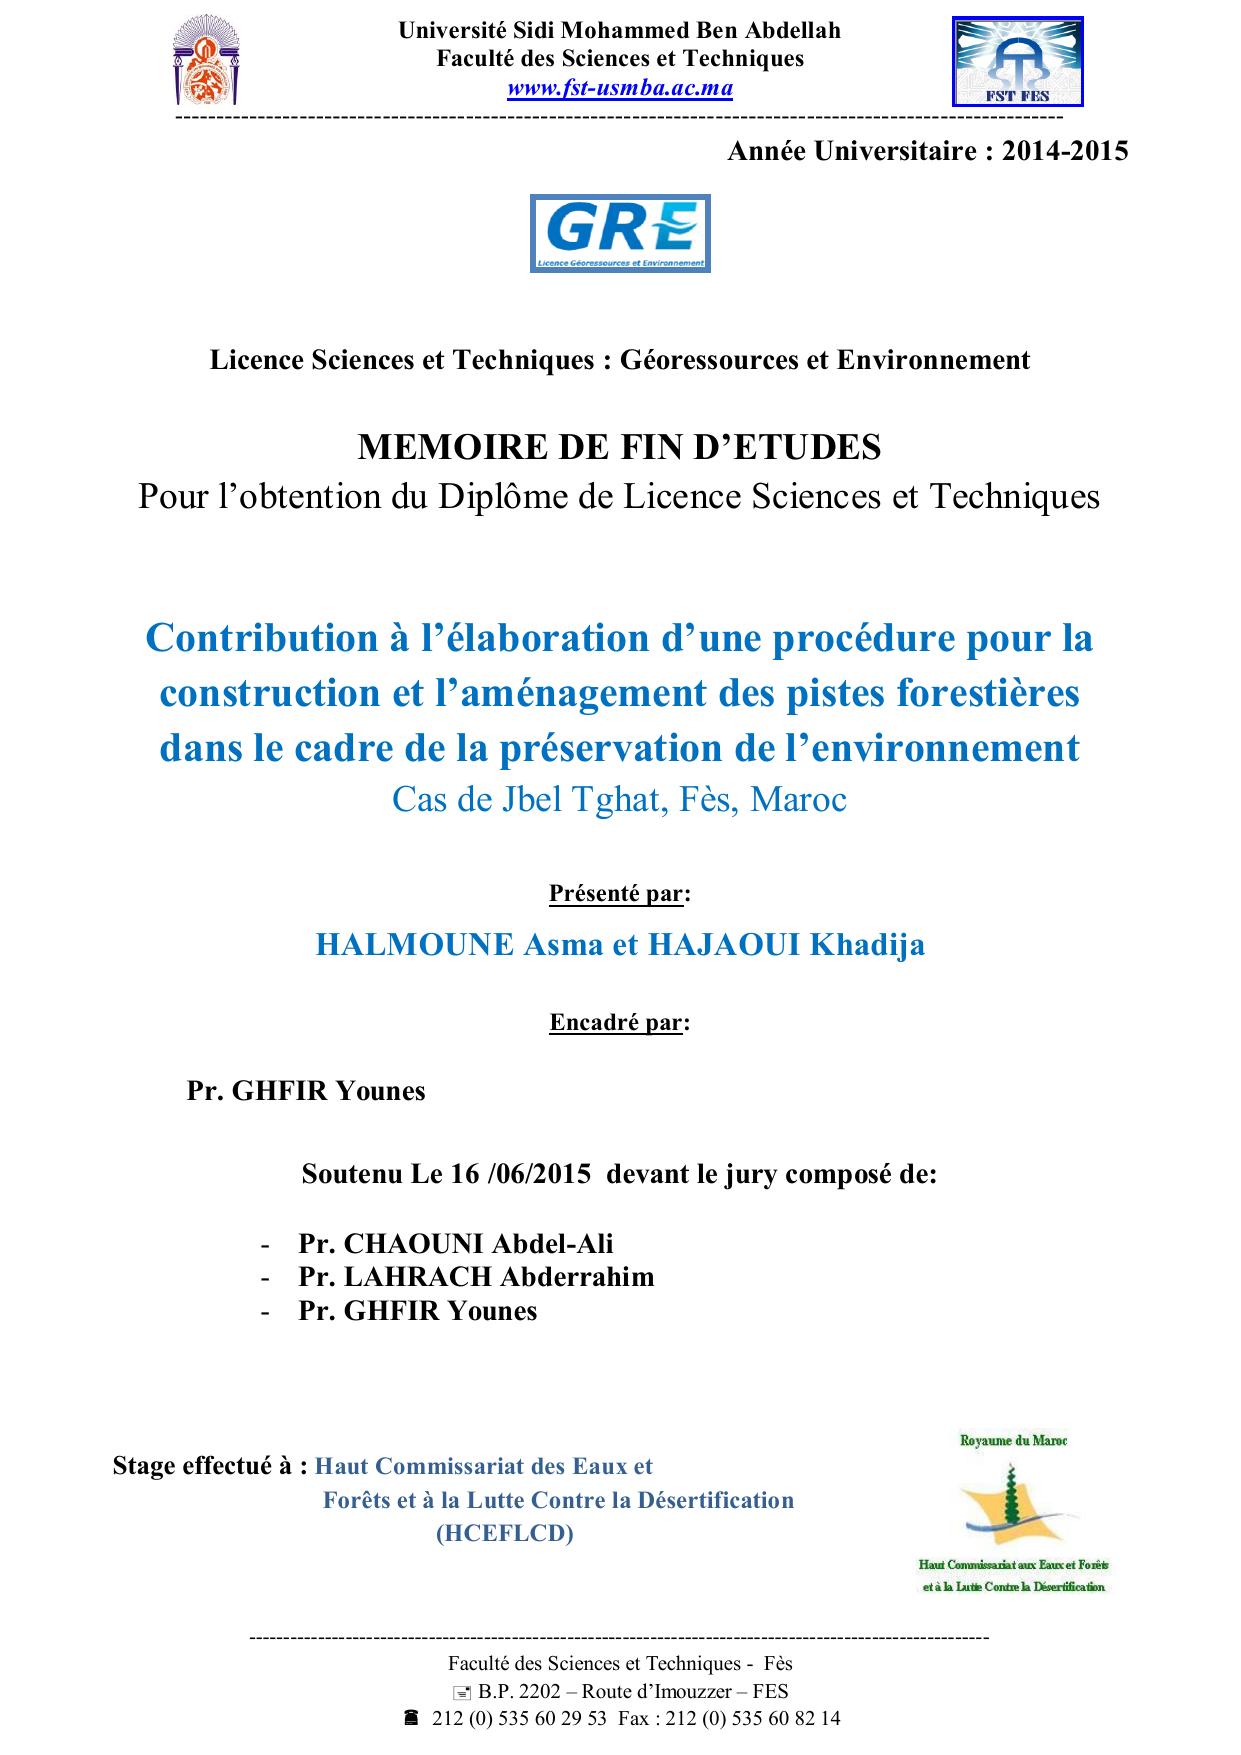 Contribution à l’élaboration d’une procédure pour la construction et l’aménagement des pistes forestières dans le cadre de la préservation de l’environnement Cas de Jbel Tghat, Fès, Maroc